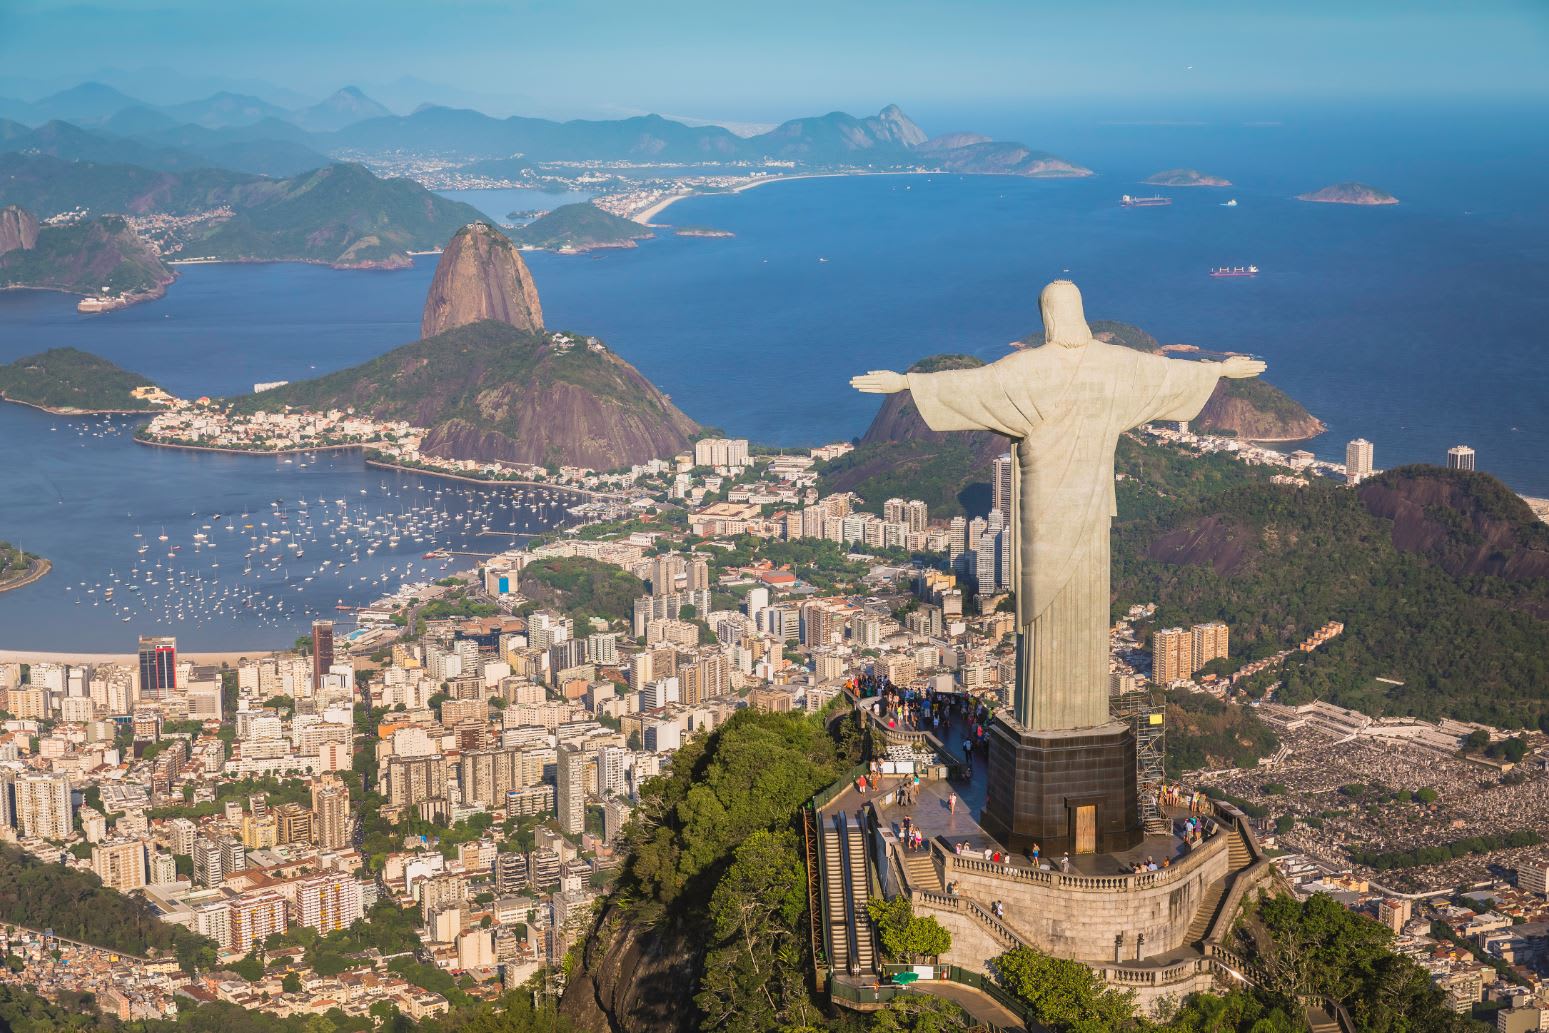 Christ the Redeemer above Rio de Janeiro